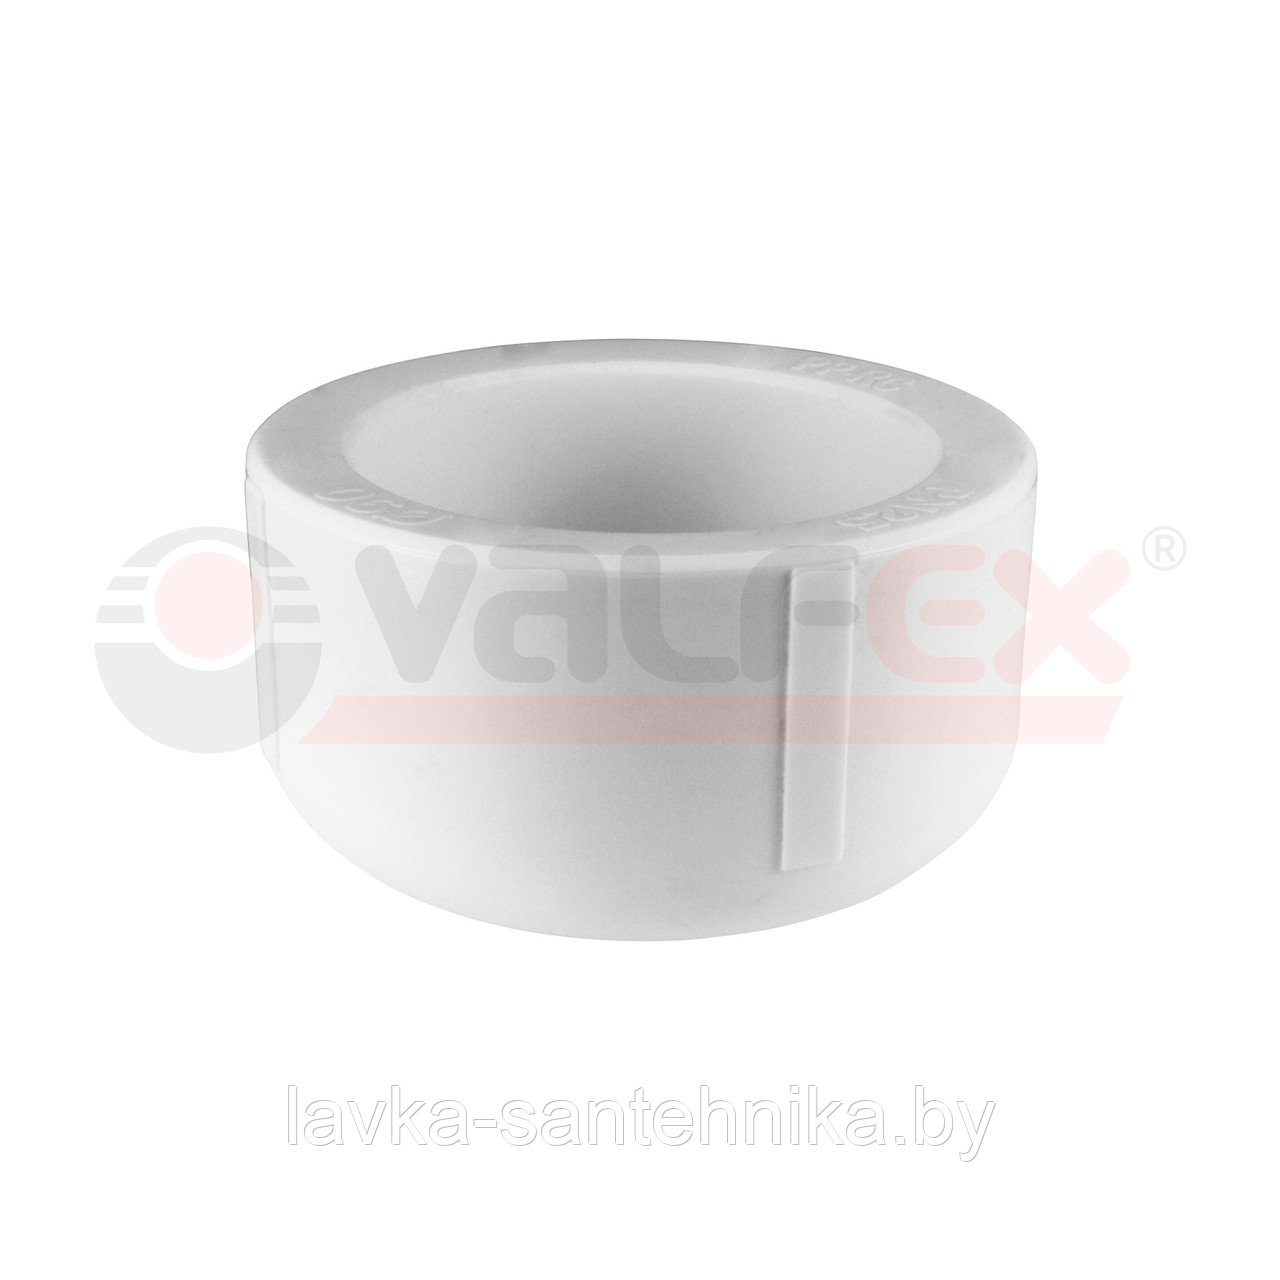 Заглушка 50 мм полипропиленовая Valfex (цвет: серый)